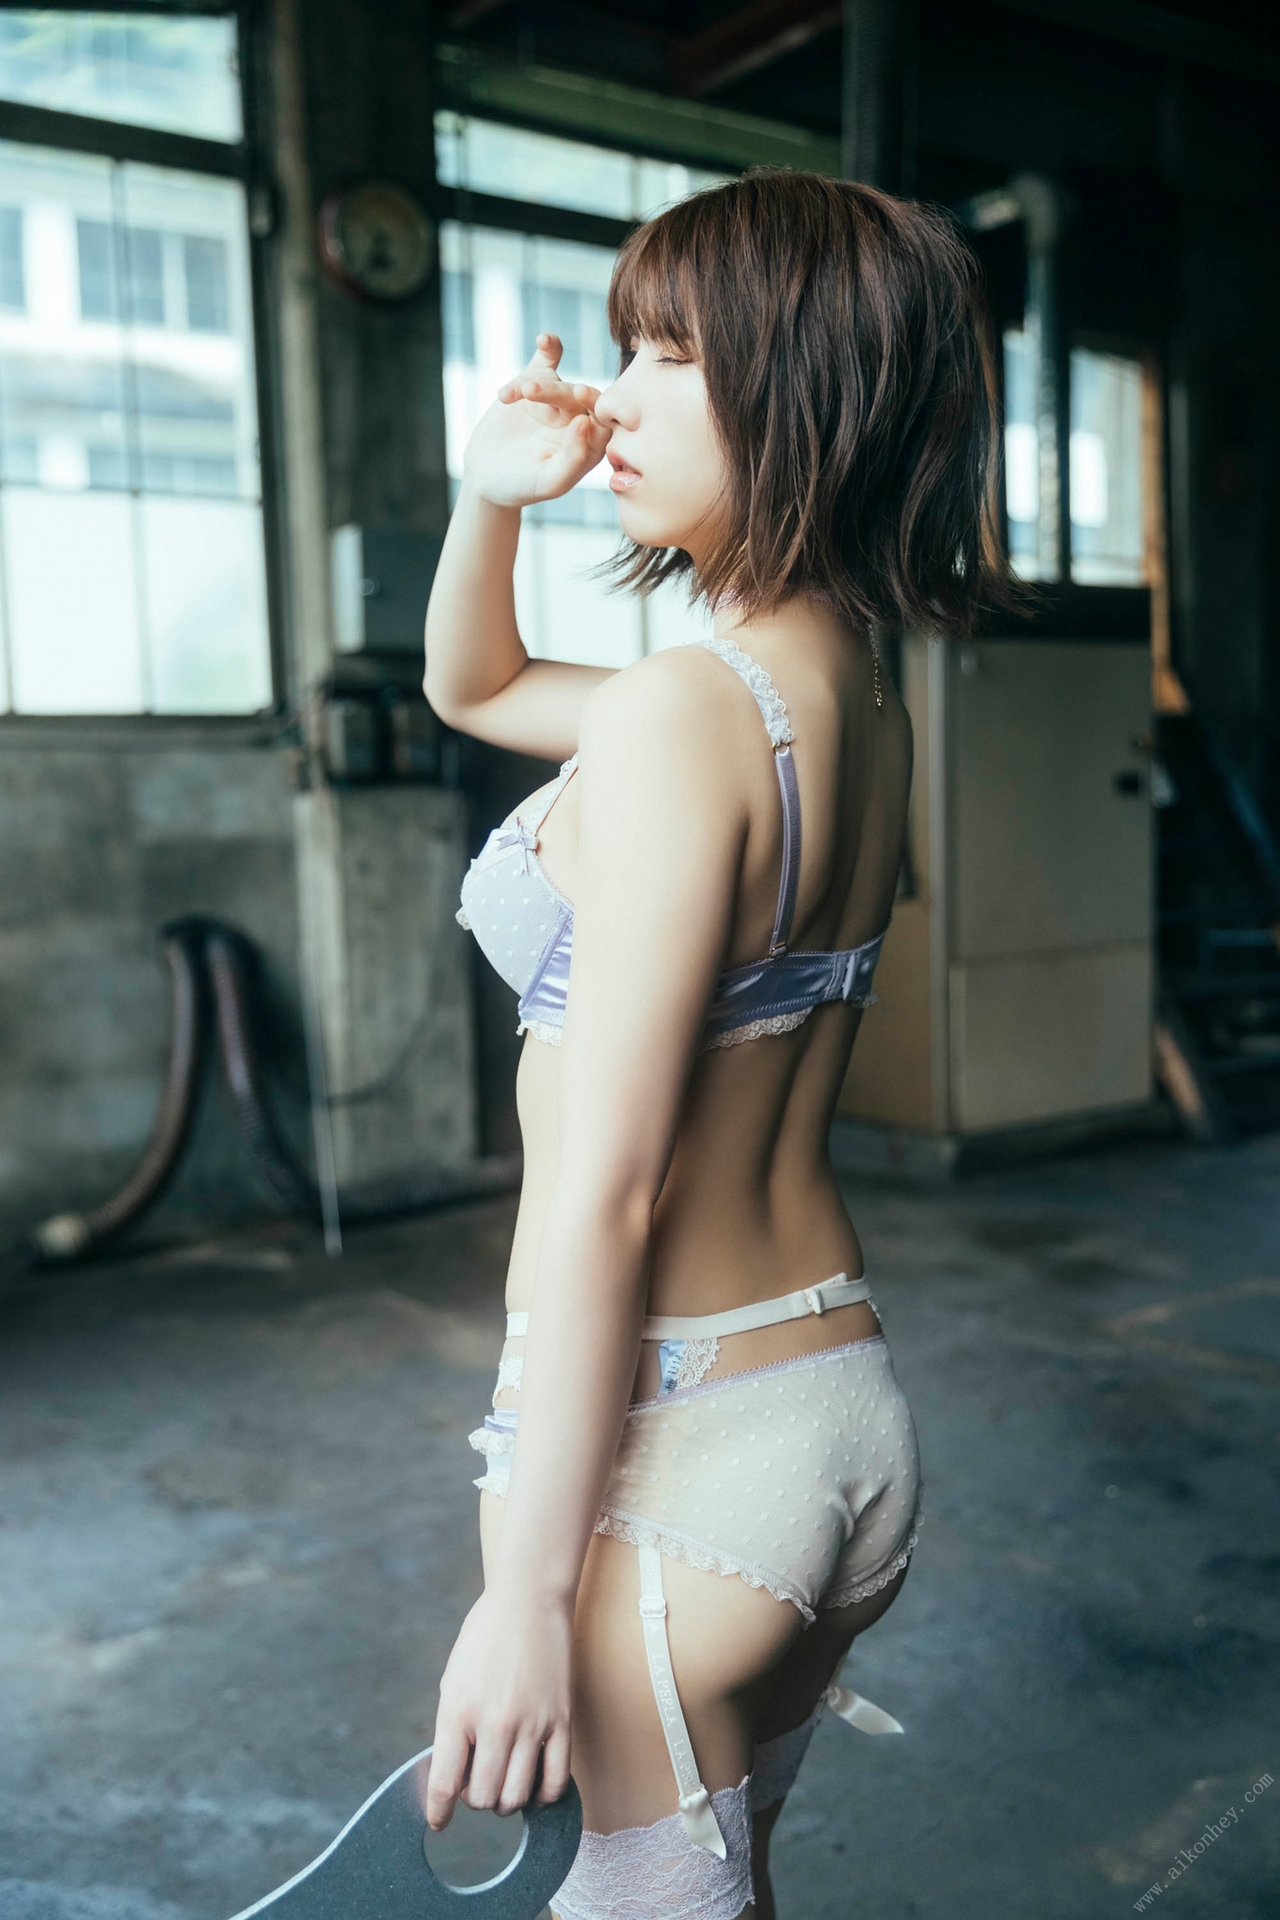 enako写真集「えなこドールと過ごした夏 ～ゼンマイを巻いて動いた心～」下载